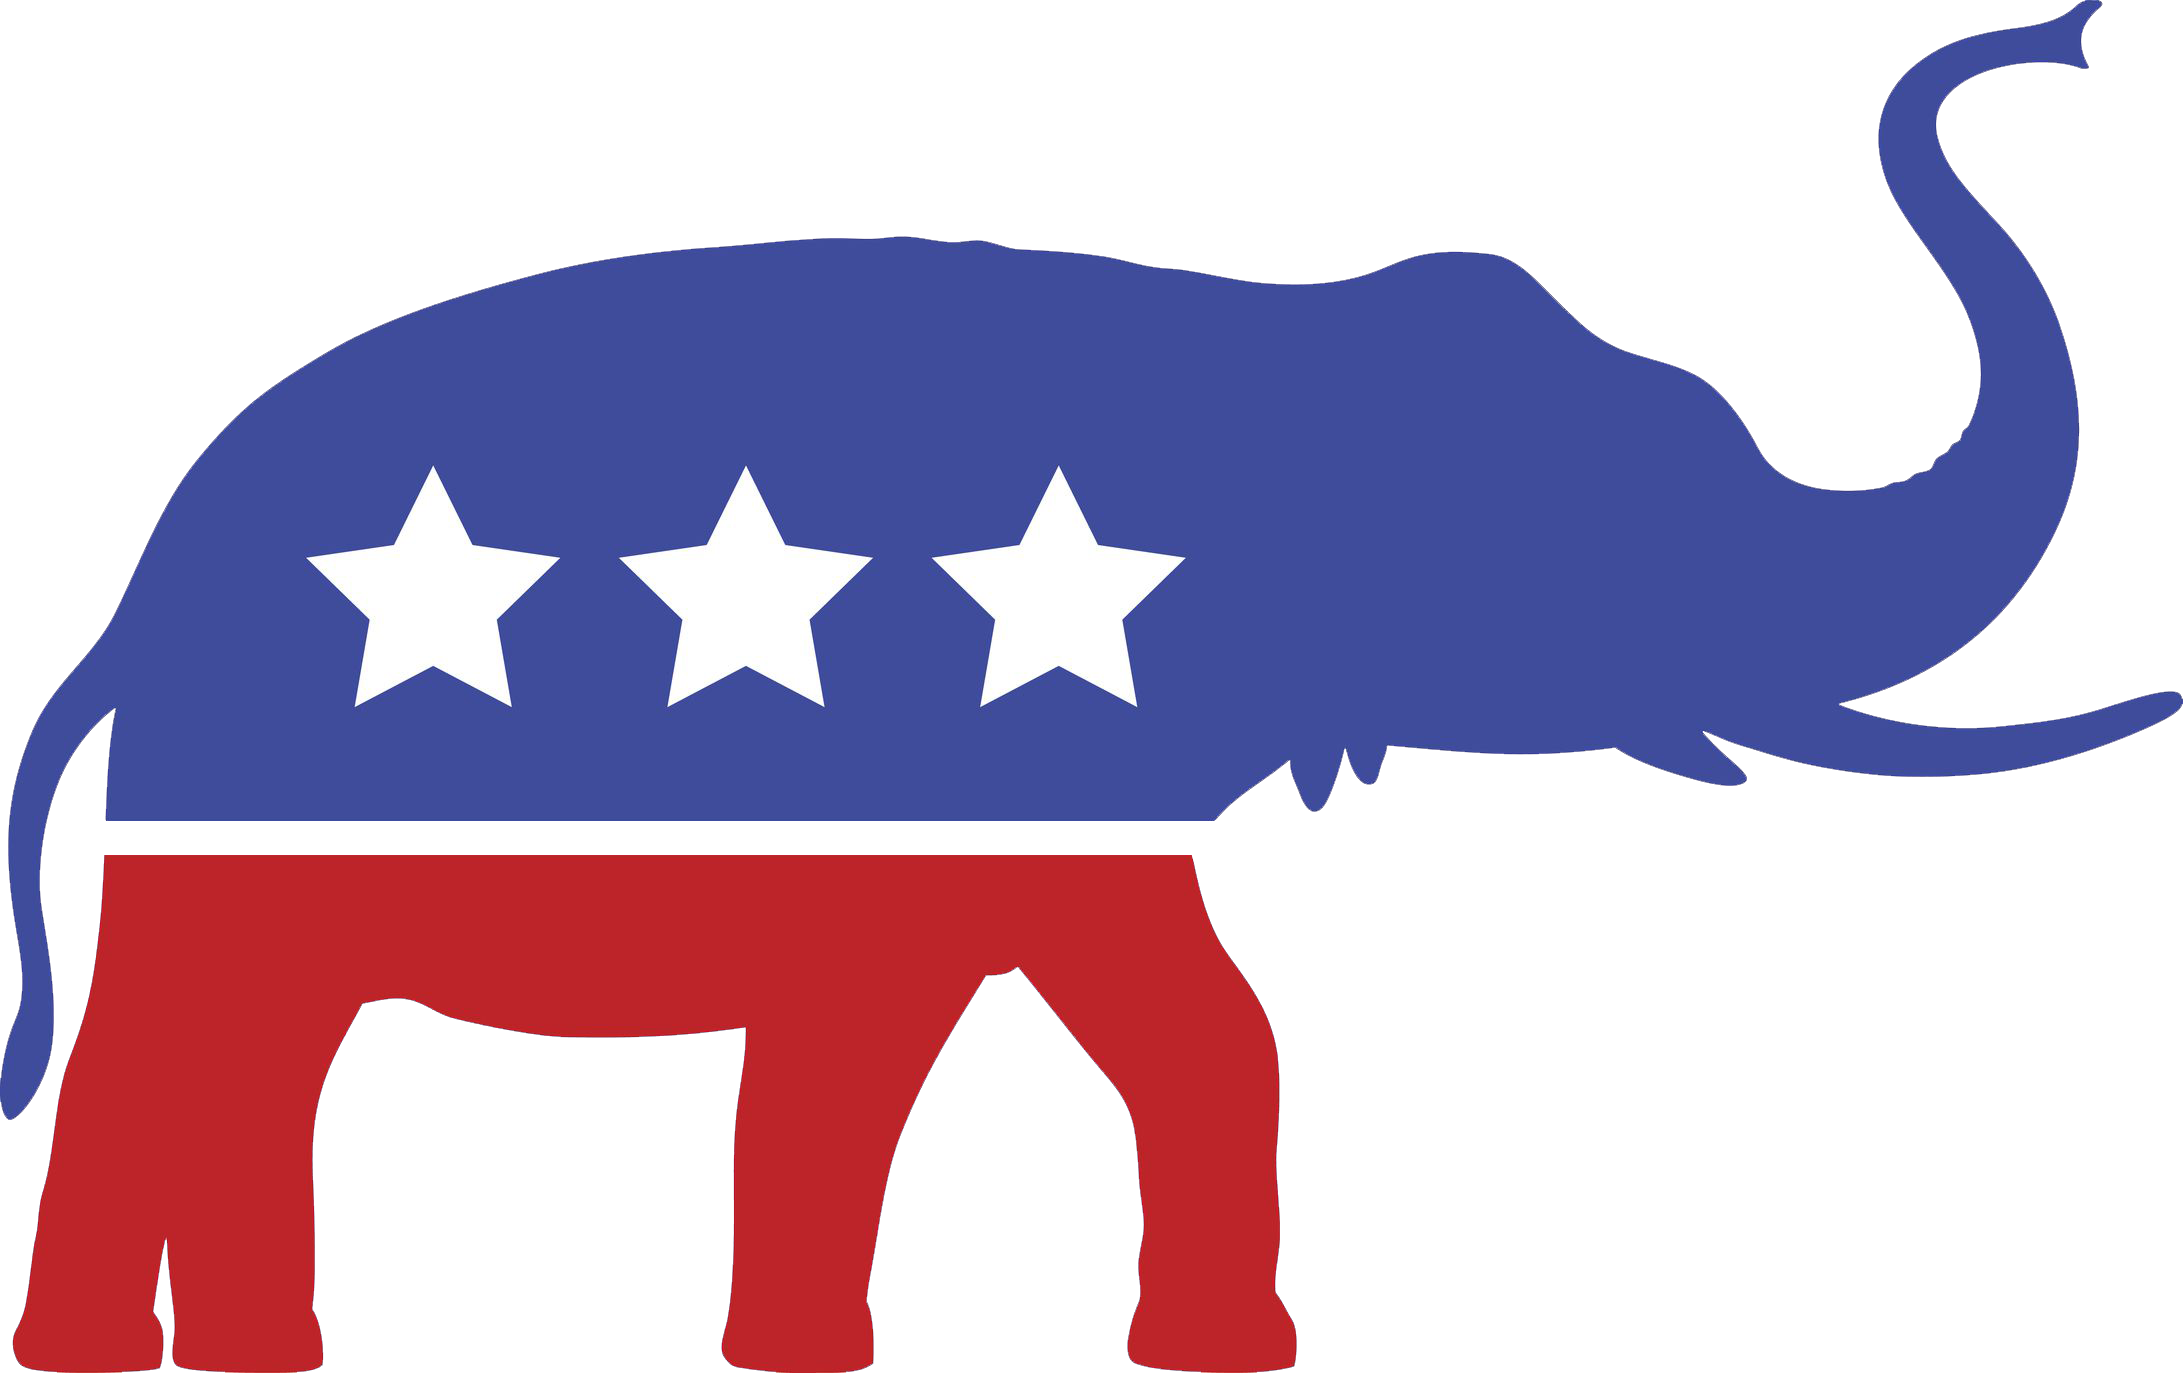 Республиканская партия идеология. Республиканская партия США символ партии. Эмблема партии республиканцев США. Флаг республиканской партии США. Республиканская партия США 1854.